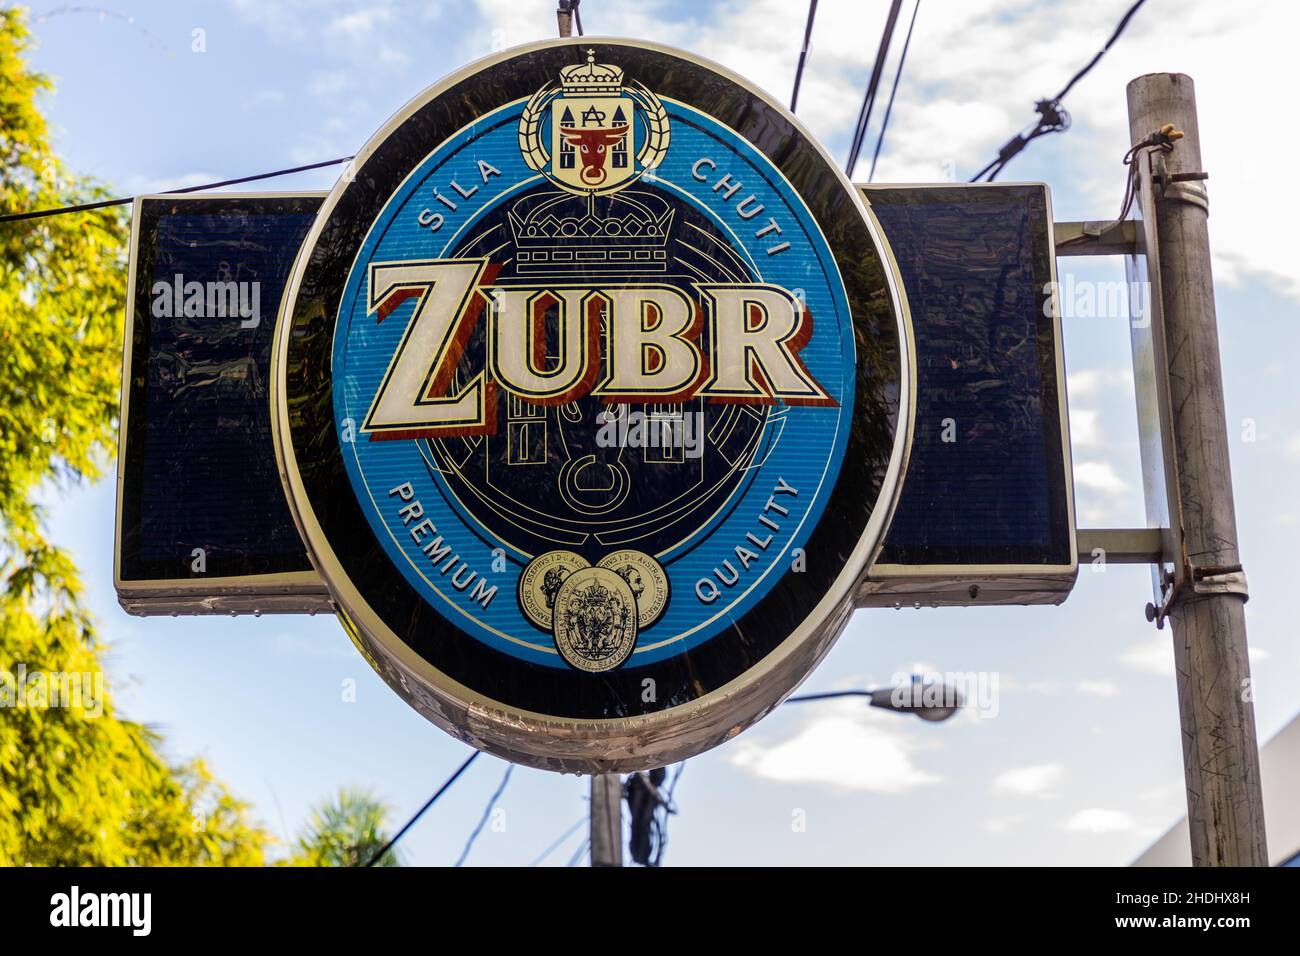 LAS TERRENAS, DOMINICAN REPUBLIC - DECEMBER 3, 2018: Zubr beer sign in Las Terrenas, Dominican Republic Stock Photo